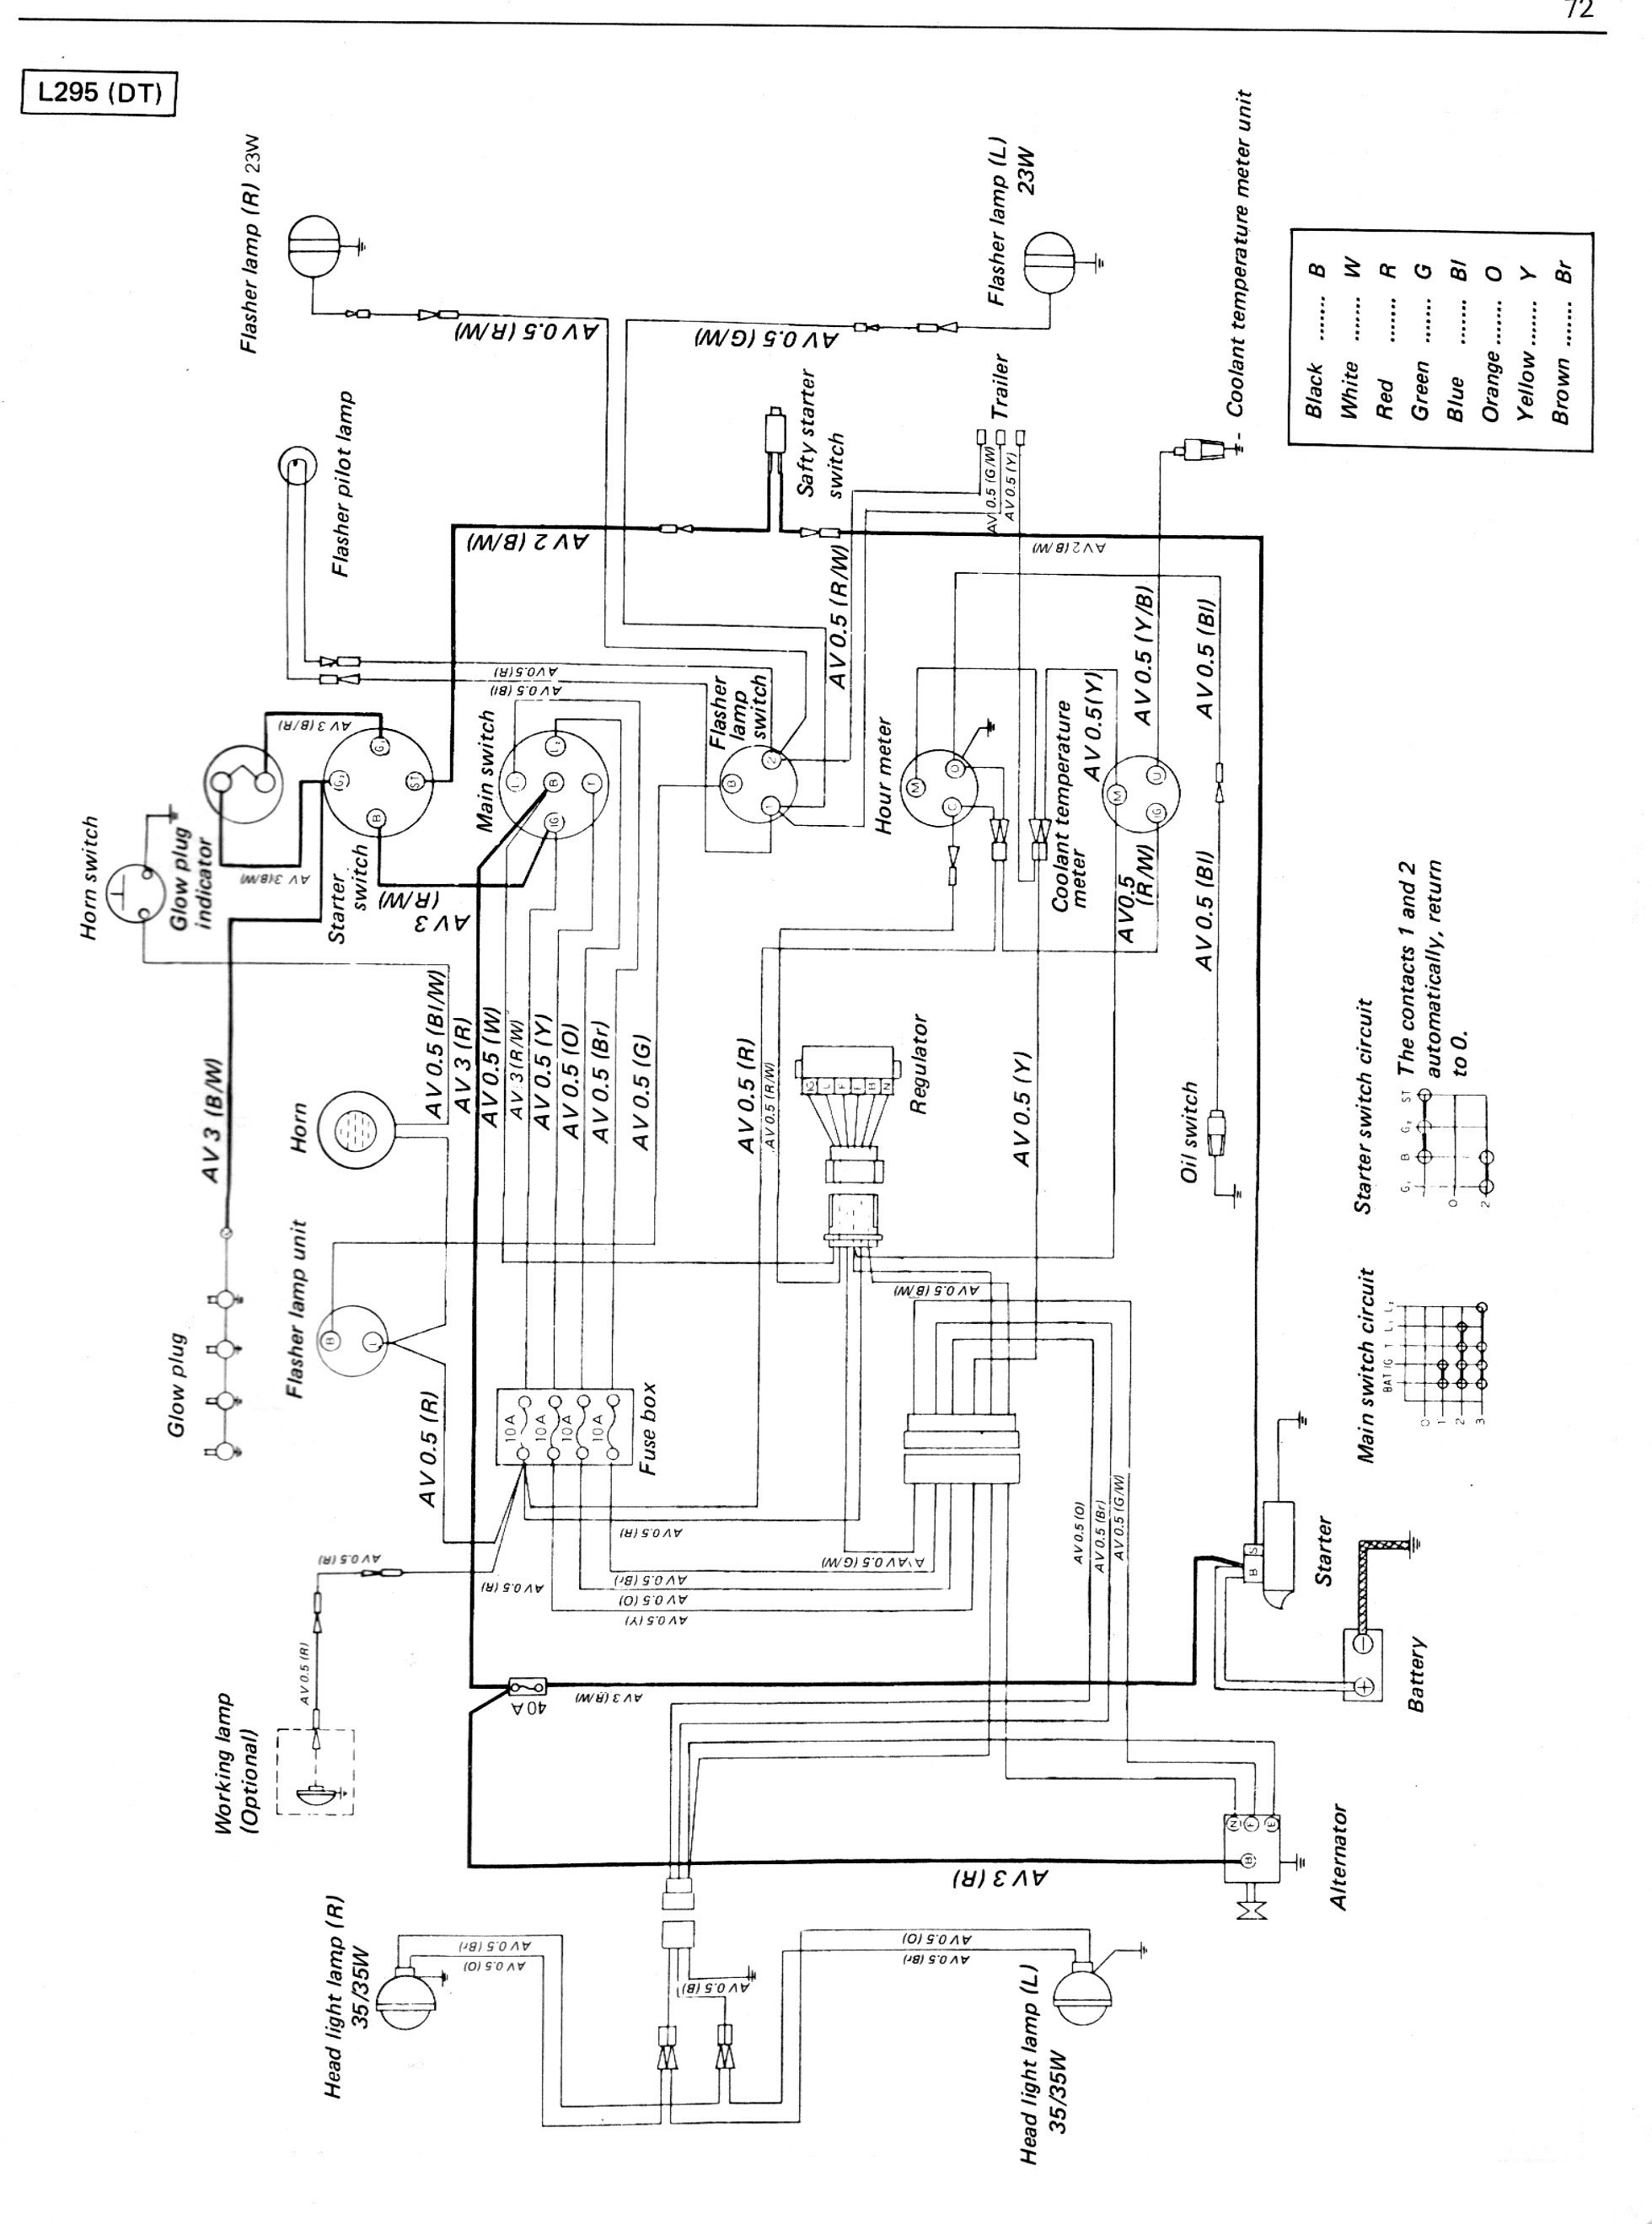 bx2230 kubota wiring diagram example electrical wiring diagram u2022 rh huntervalleyhotels co Kubota Service Manual Wiring